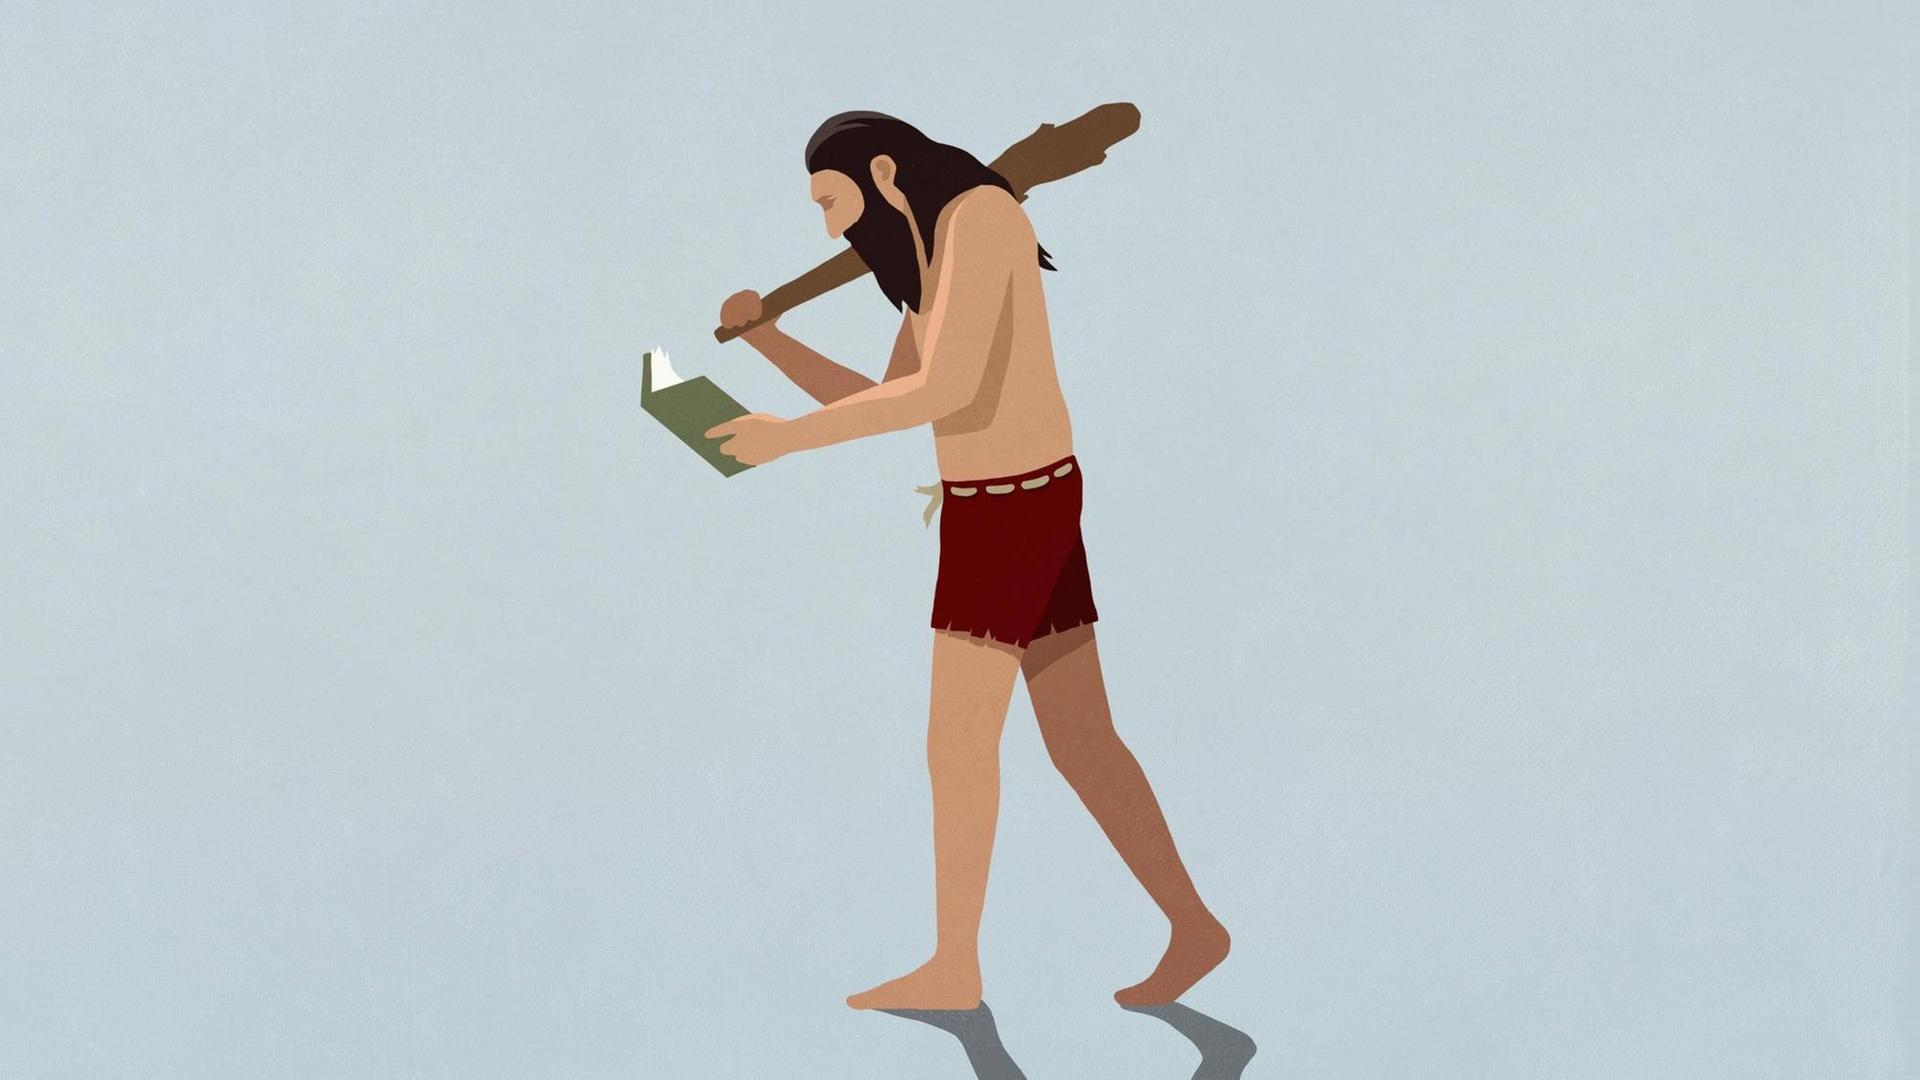 In der Illustration geht ein Neanderthaler während er ein Buch liest.